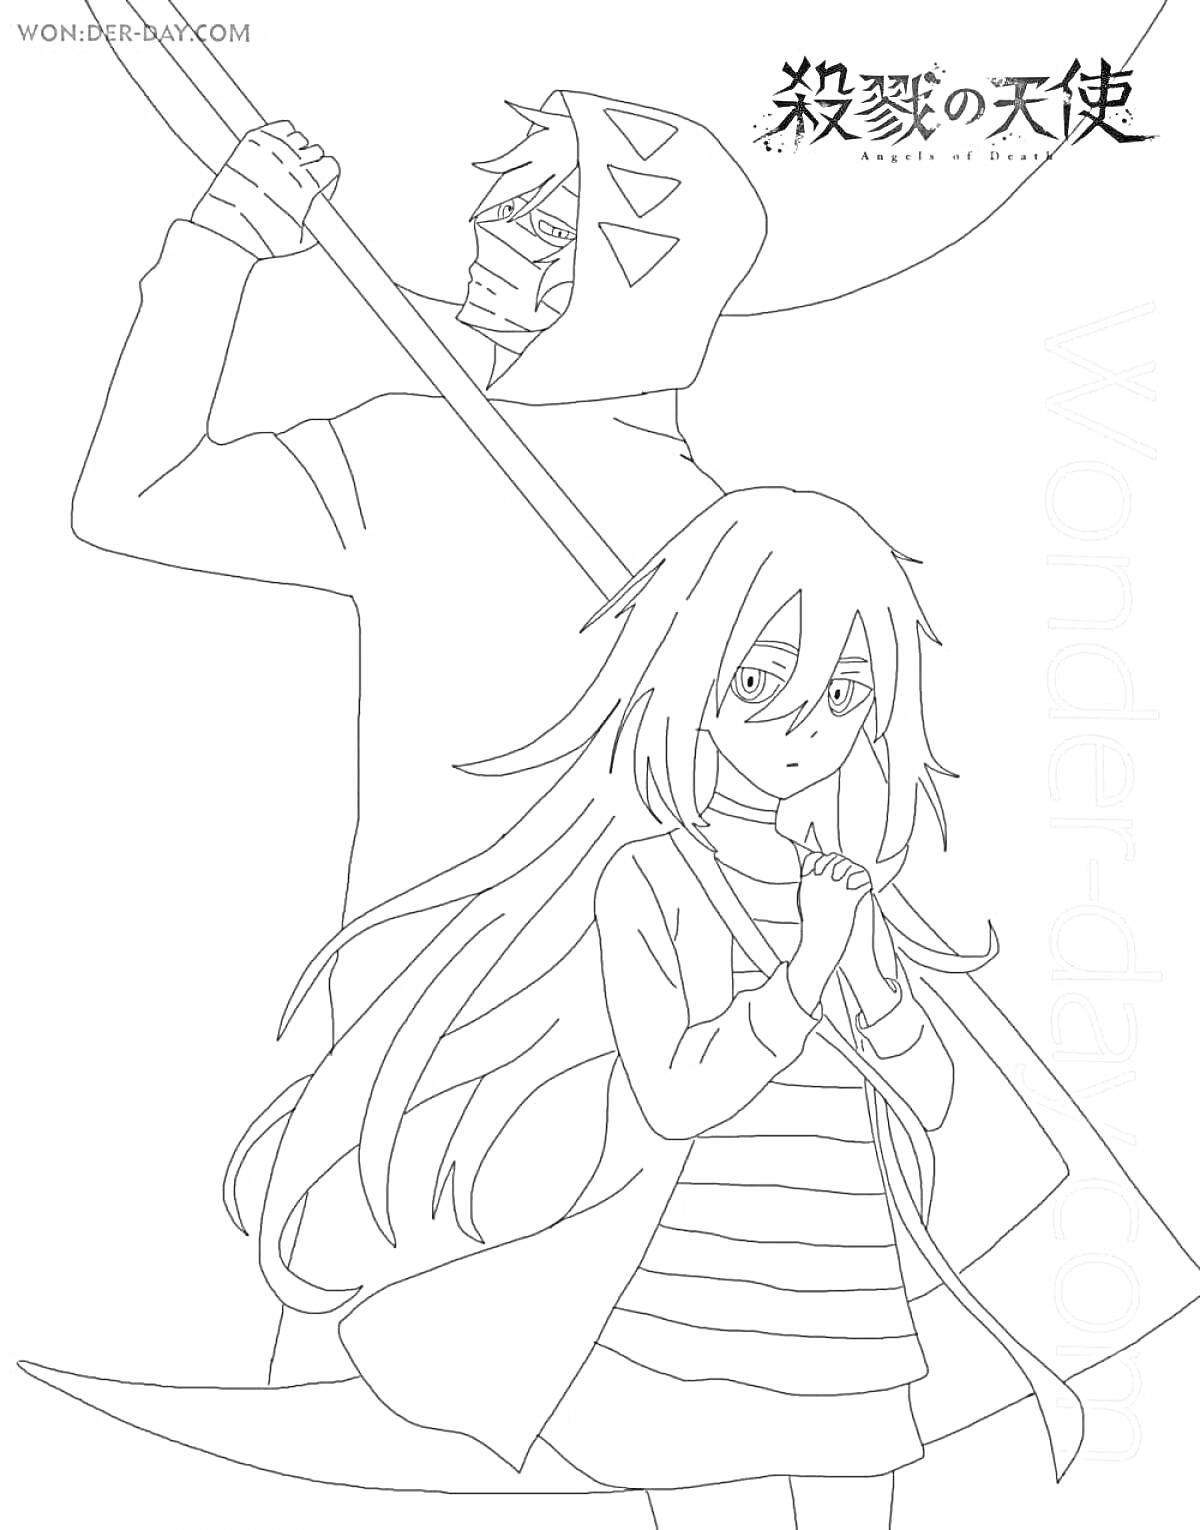 Раскраска Два аниме персонажа из Ангелы Кровопролития: юноша с капюшоном и оружием за спиной, девушка с длинными волосами в полосатом платье и кардигане